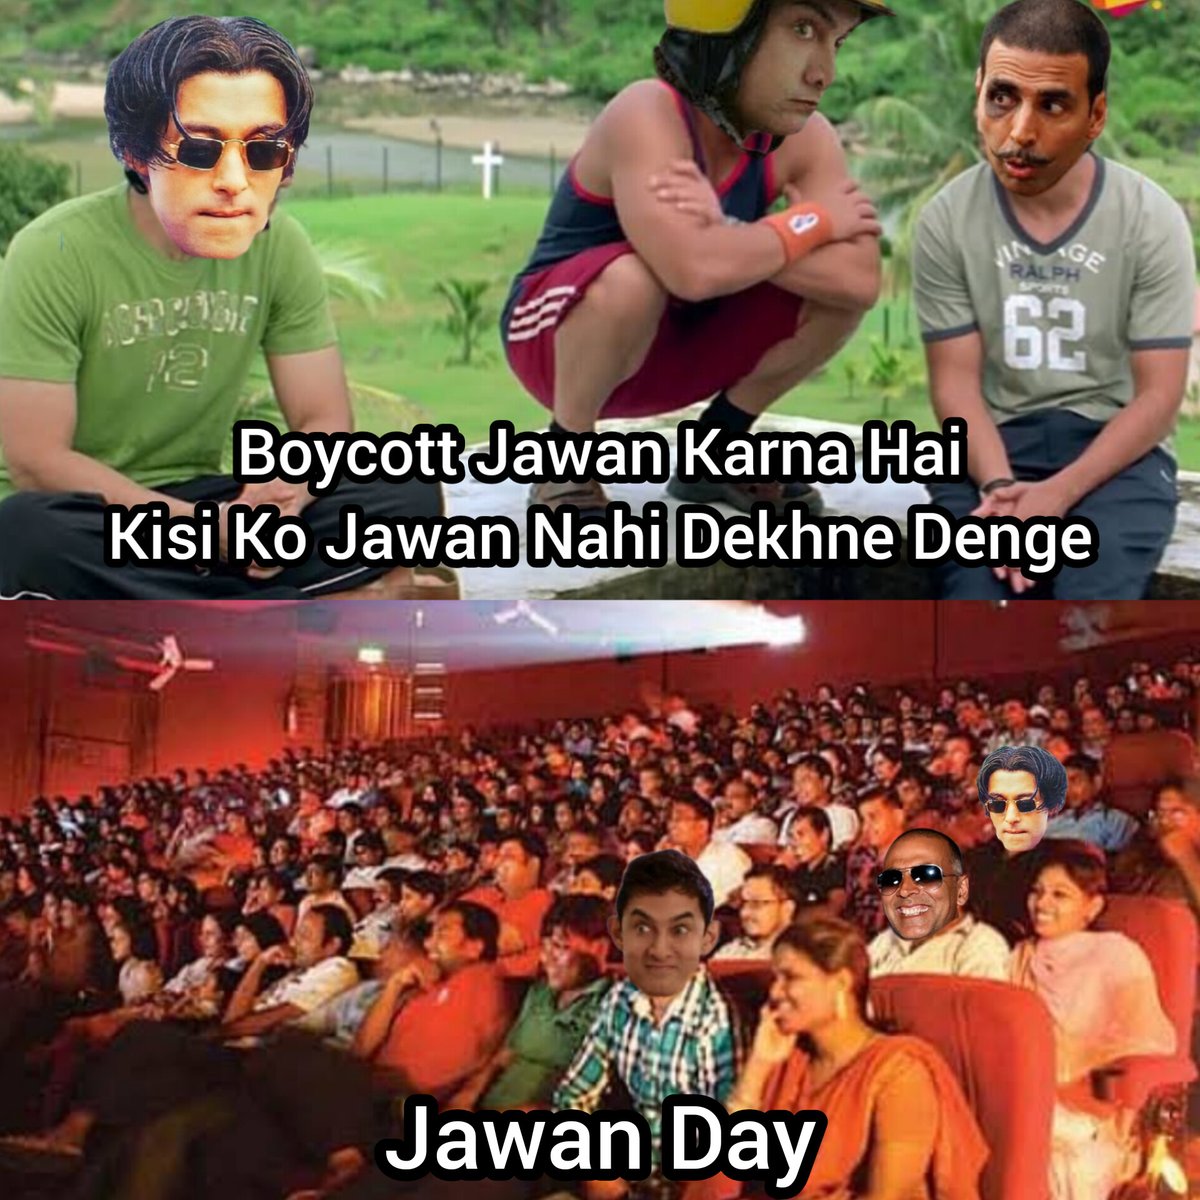 #BoycottJawanMovie

#Jawan #JawanReviews #JawanMovie #shahrukhkhan #JawanMovieReview #rjkalpesh #rjkalpeshvaya #BoycottJawanMovie #JawanBlockBuster #JawanCollection